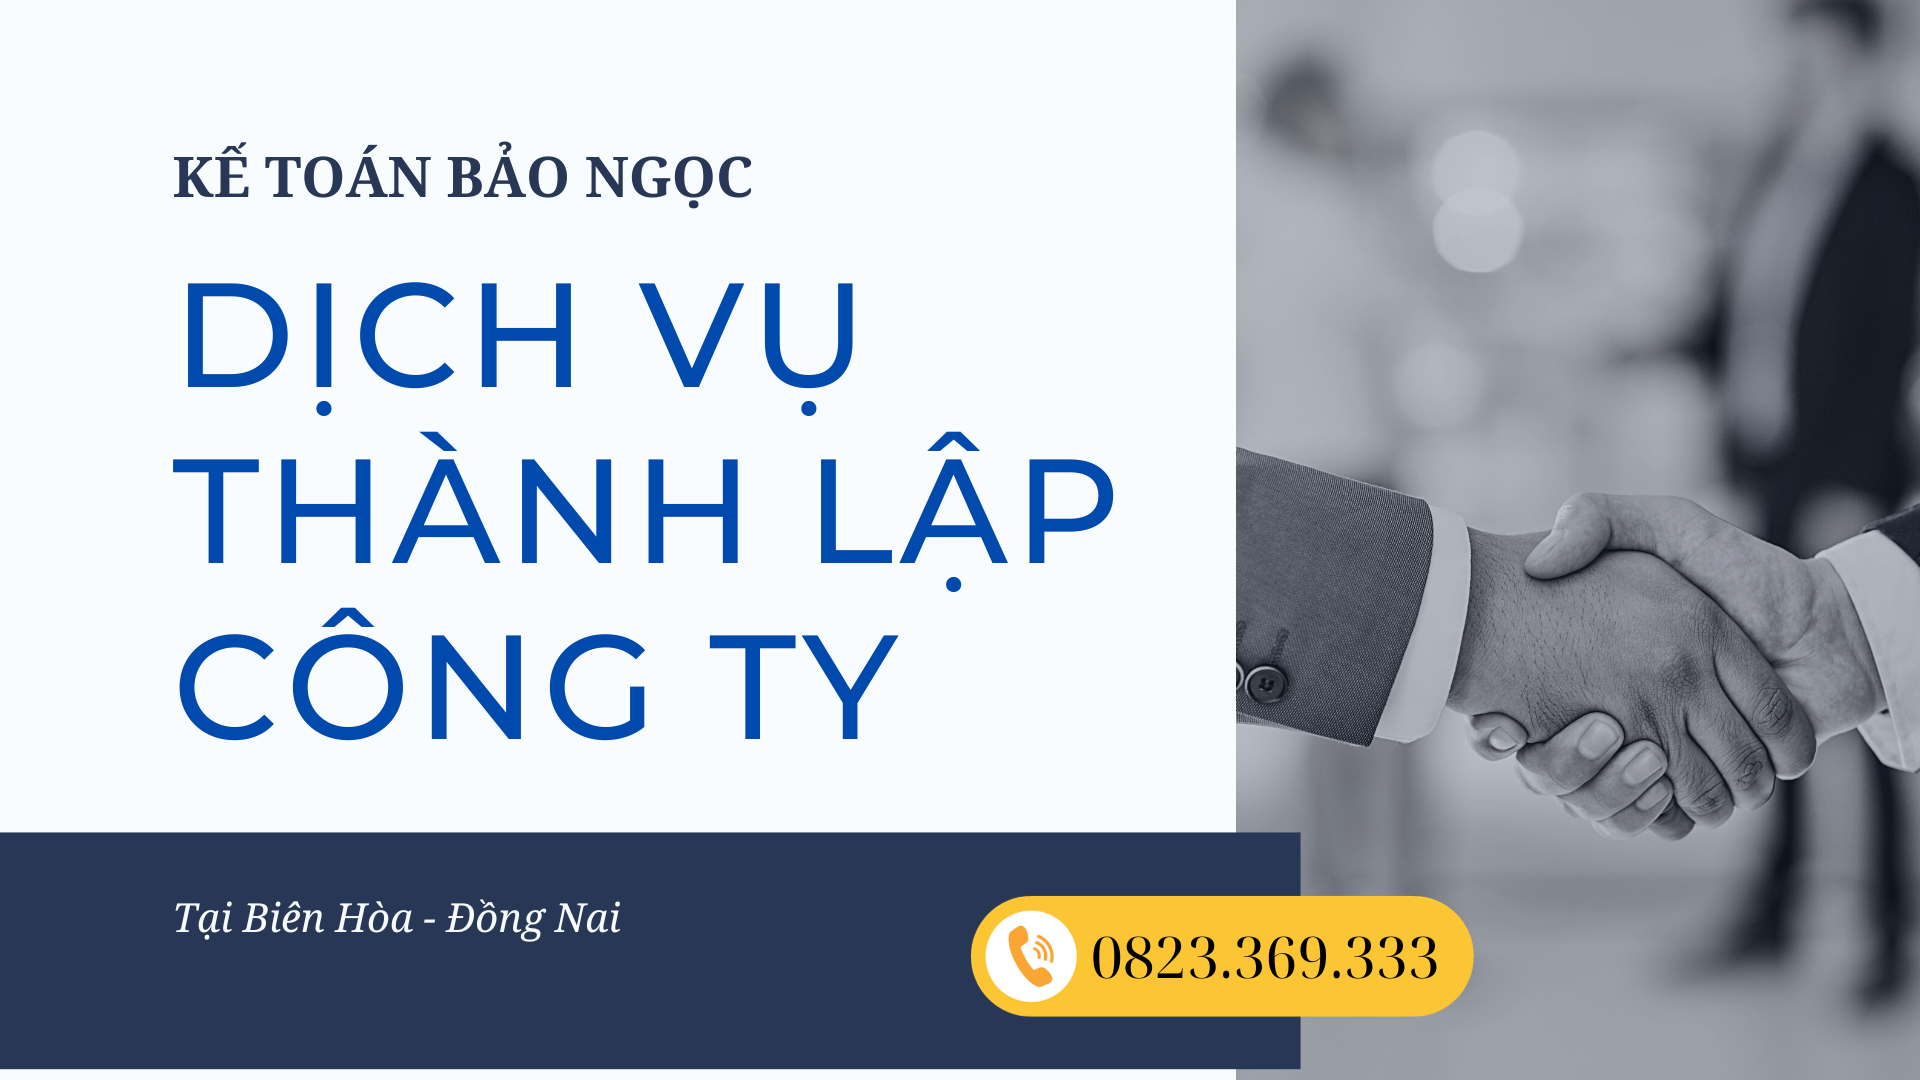 Dịch vụ thành lập công ty tại TP Biên Hòa - Đồng Nai